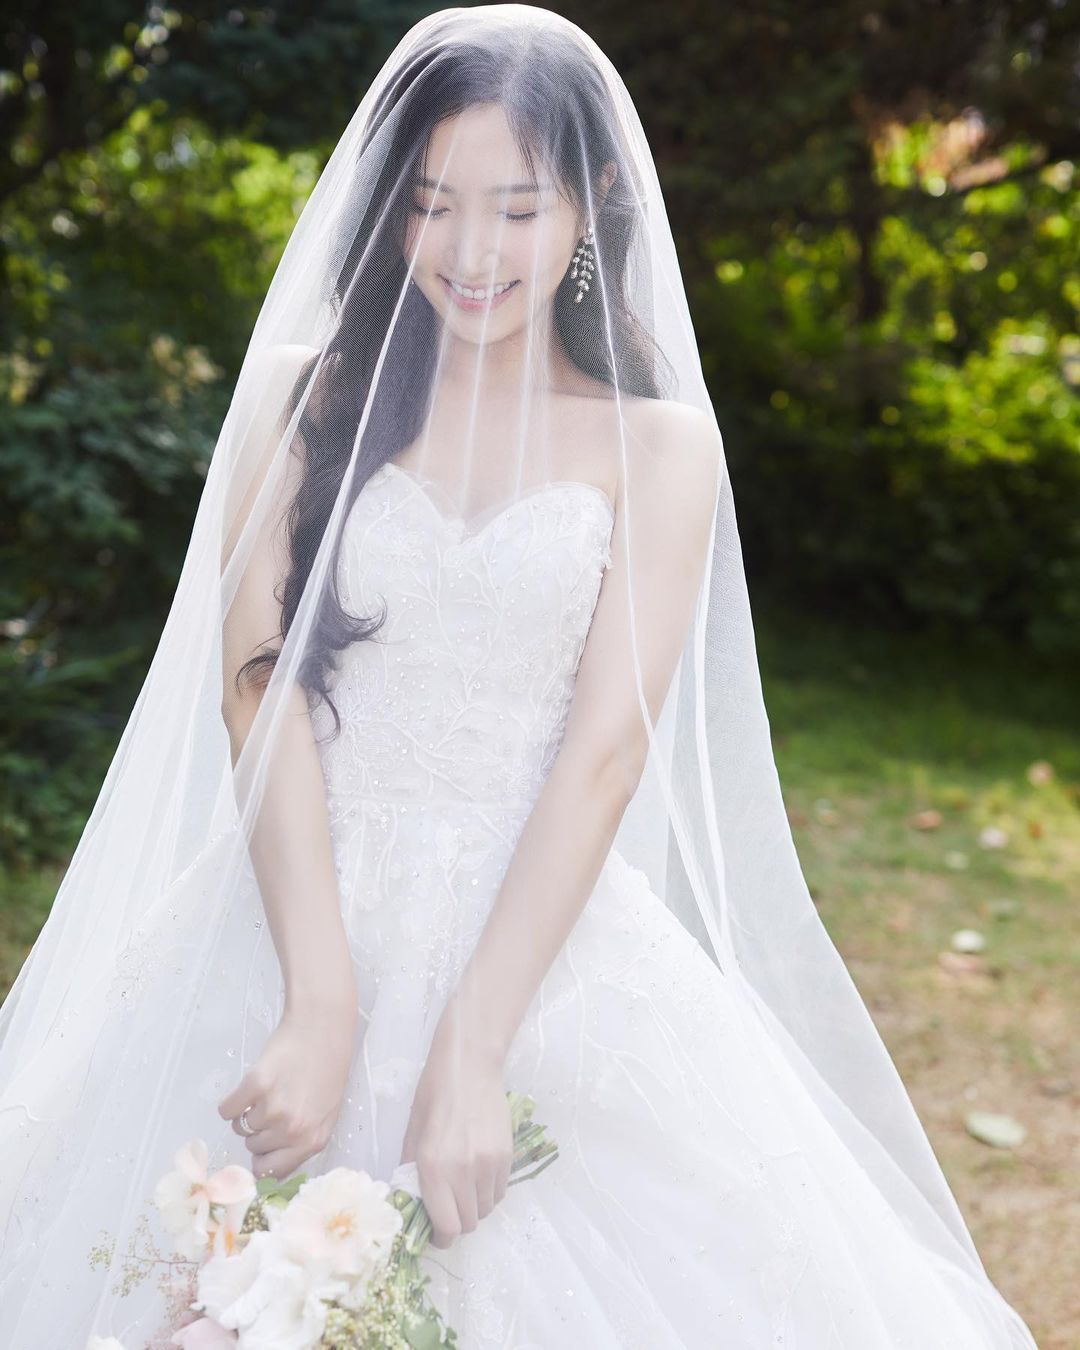 Hong Yoo Kyung Apink umumkan akan menikah 